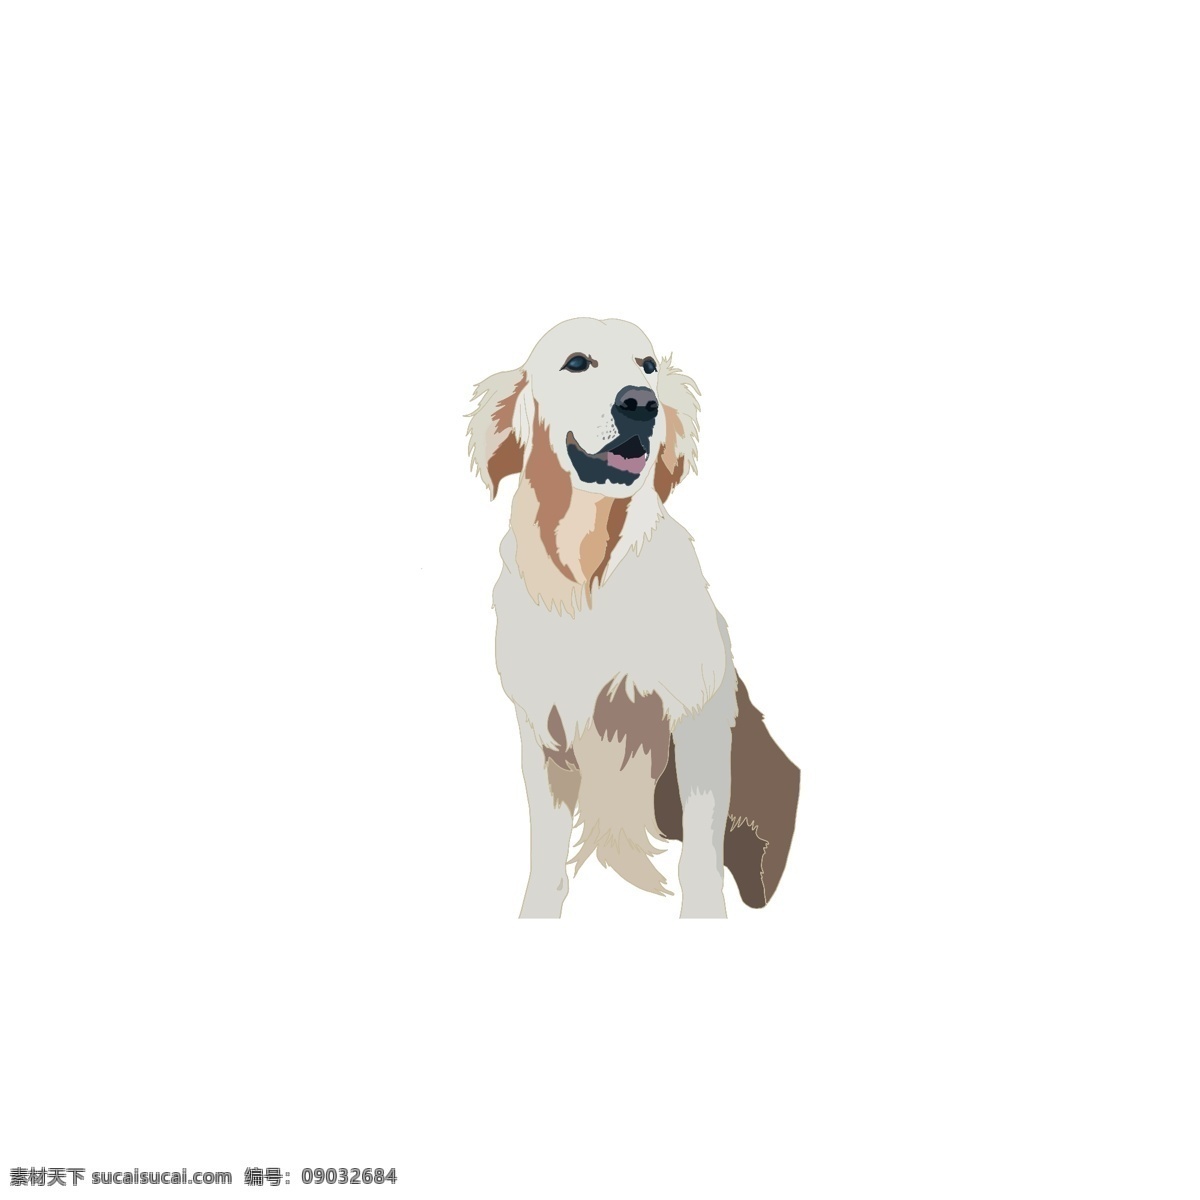 卡通 只 拉布拉多 动物 商用 萌宠 插画 狗狗 手绘 拉布拉多犬